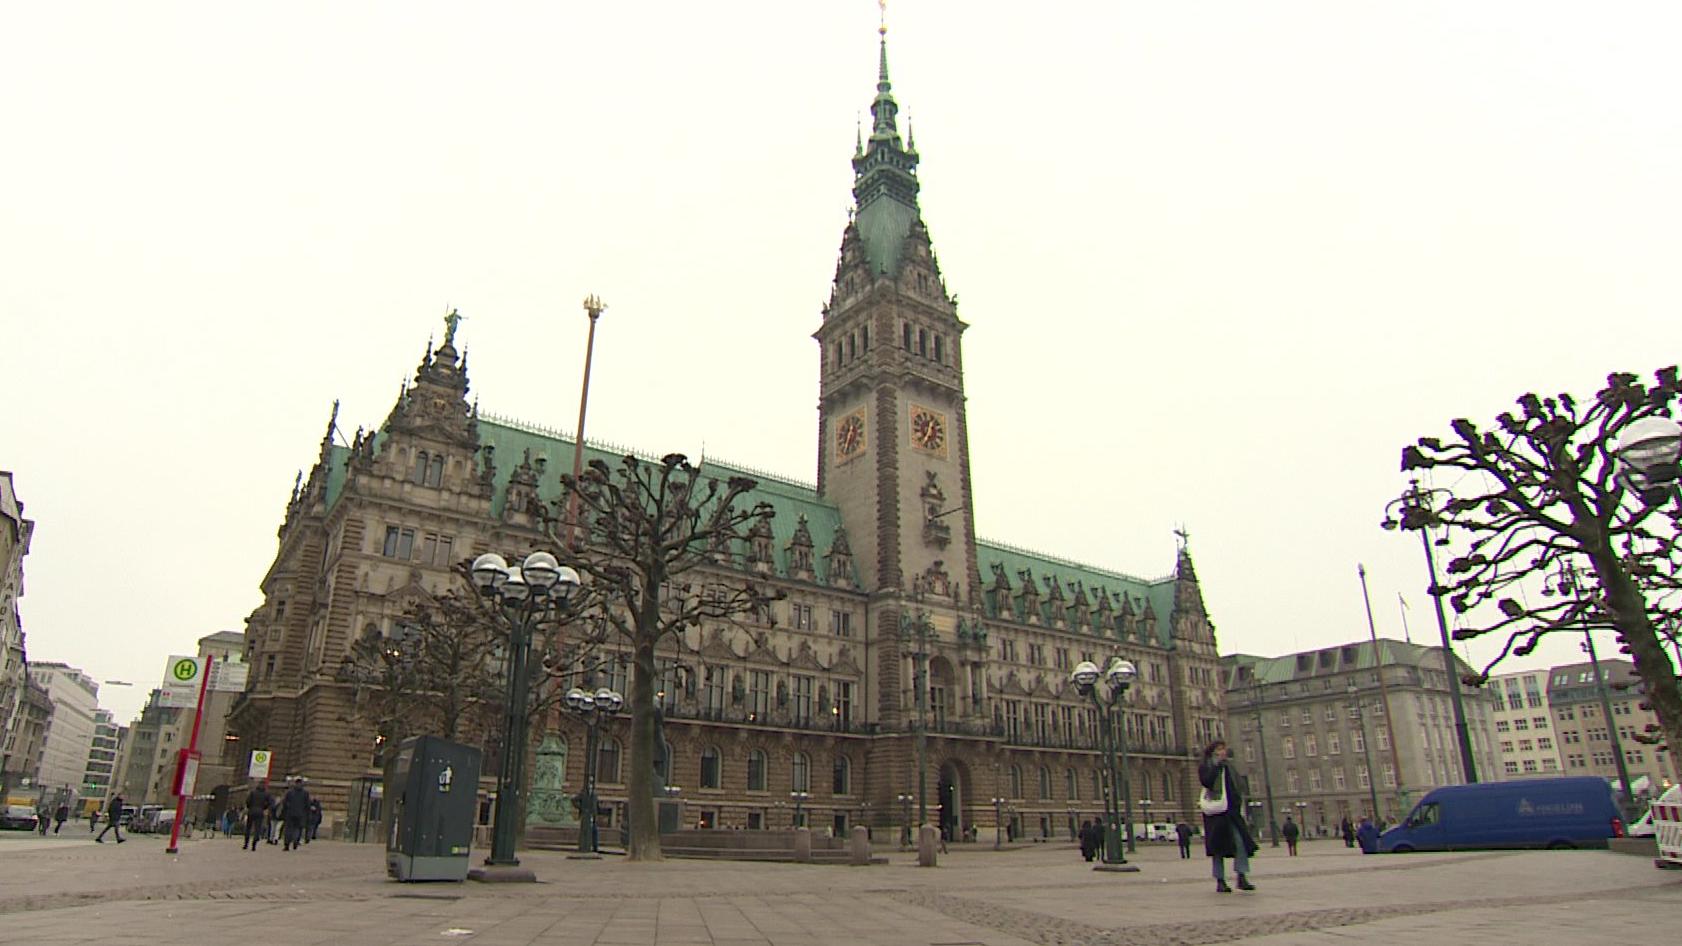 Das Hamburger Rathaus: Hier soll am Freitagabend ein möglicherweise bewaffneter Unbekannter nach Bürgermeister Peter Tschentscher gesucht haben.